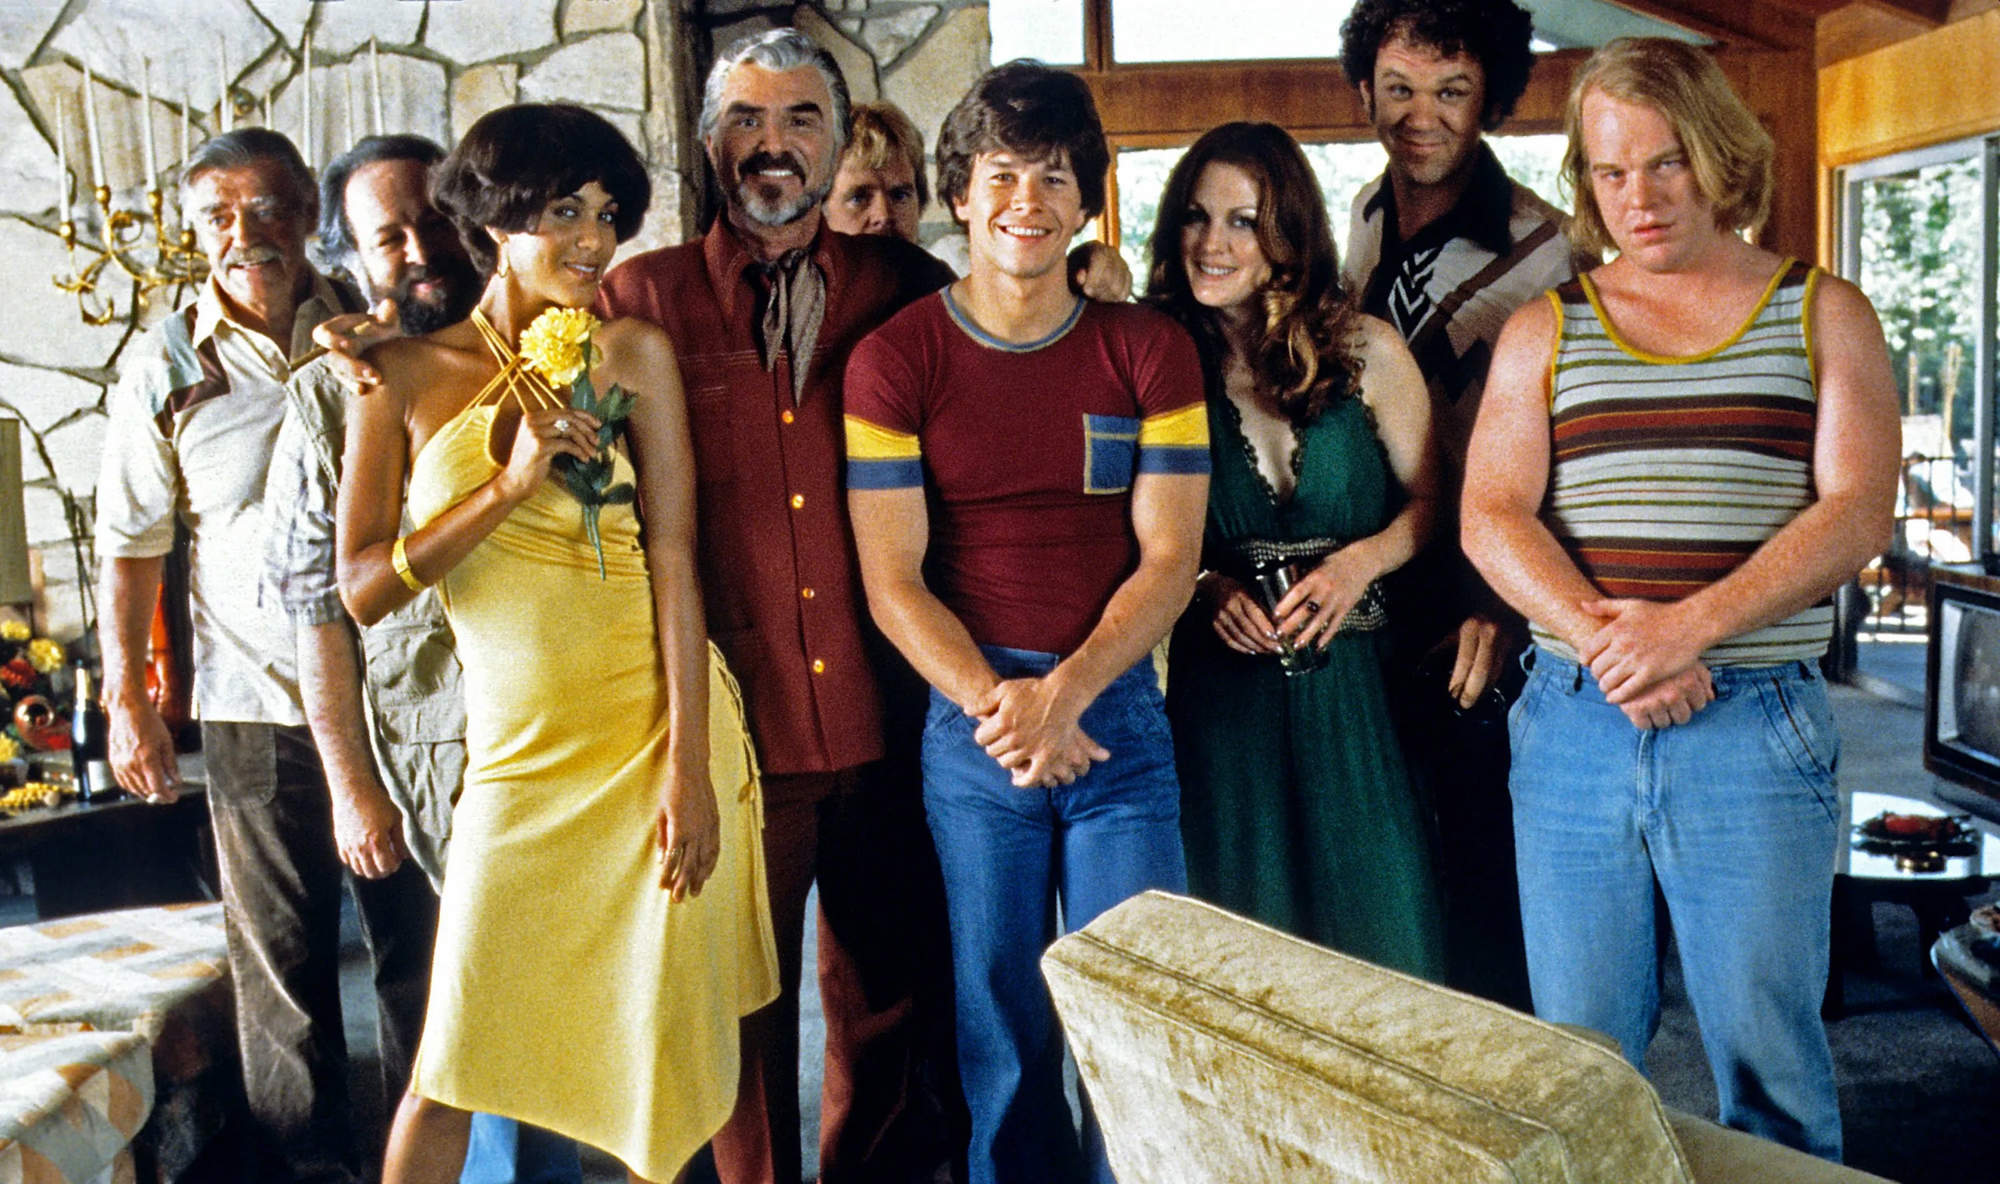 Grupo de personas vestidas años 70 posan ante la cámara en un salón.